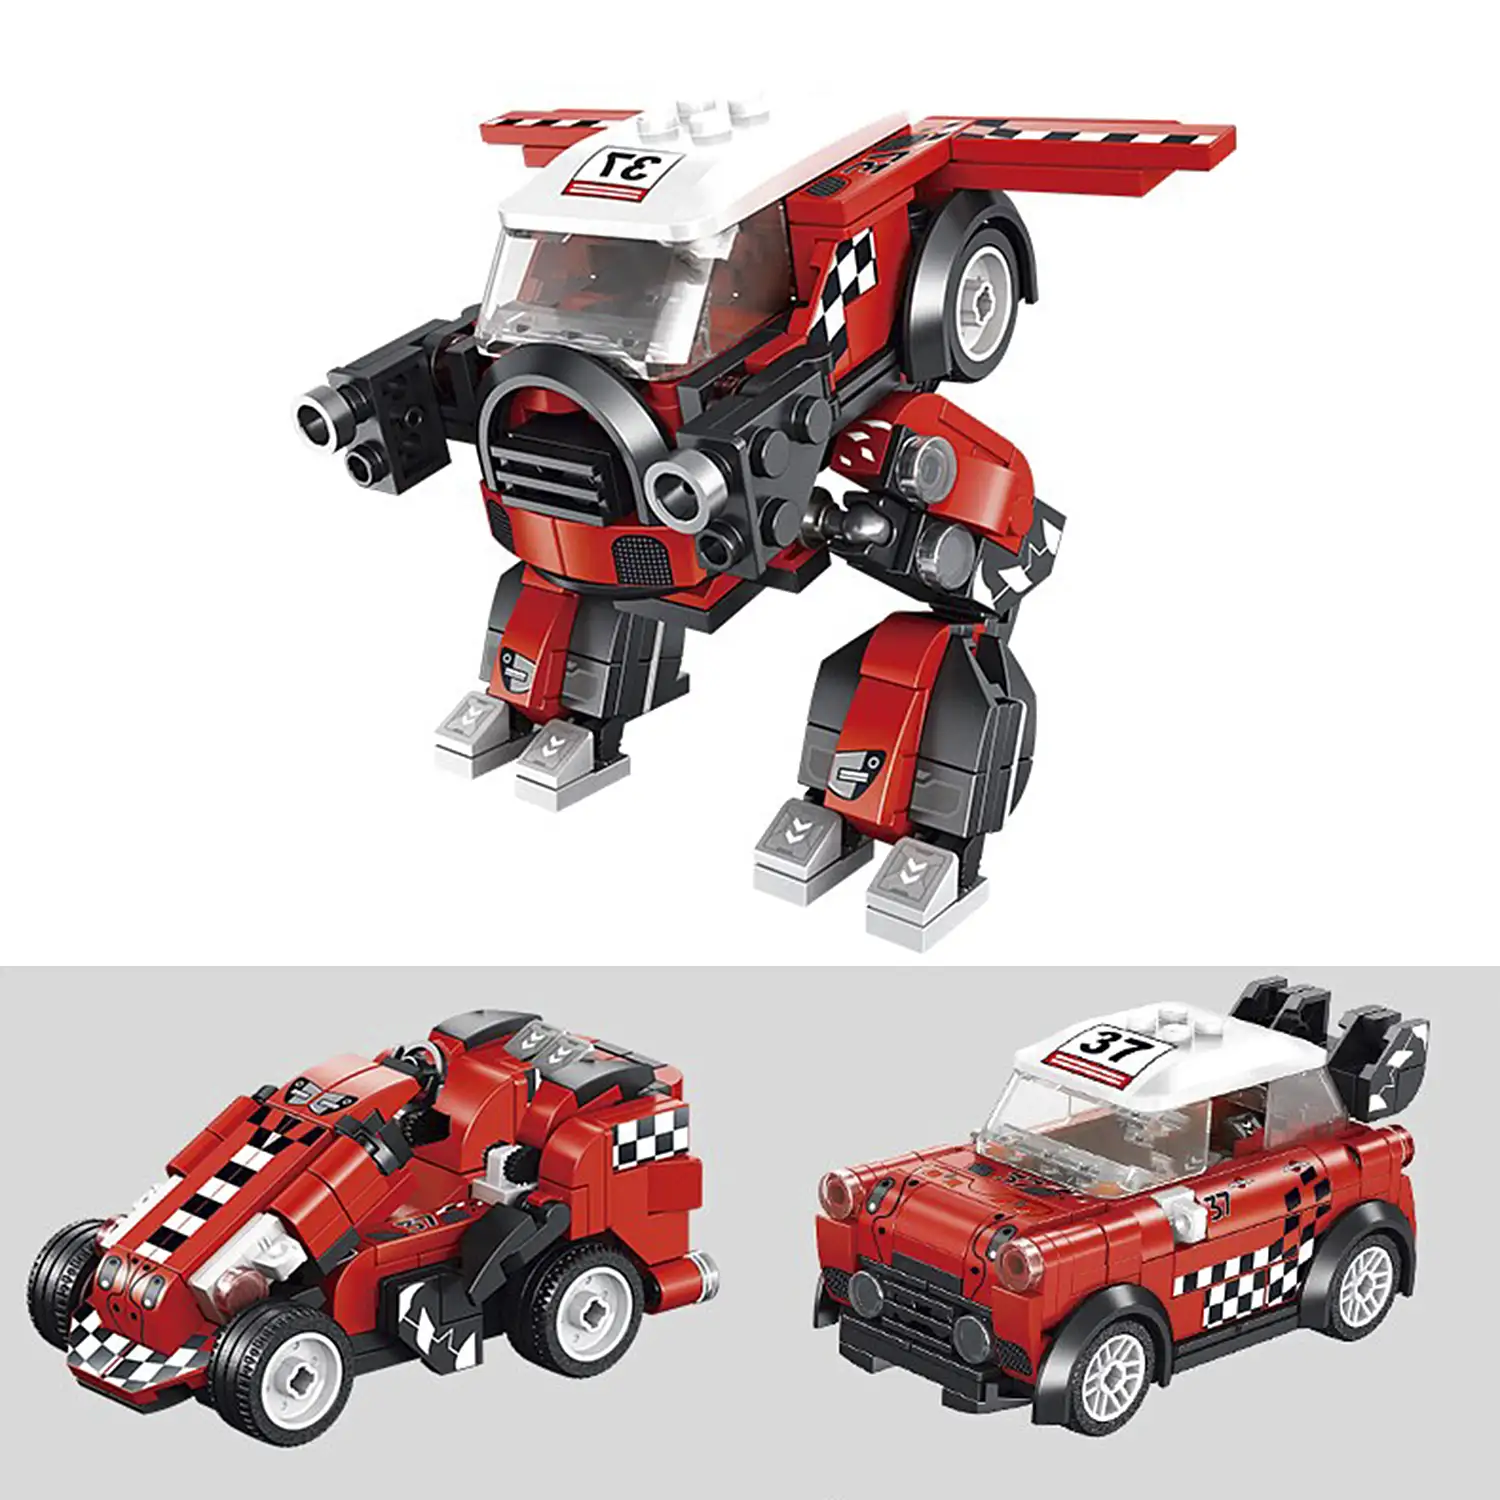 Coche de carreras Minicoop 3 en 1, con 214 piezas.  Construye además un robot o un kart.